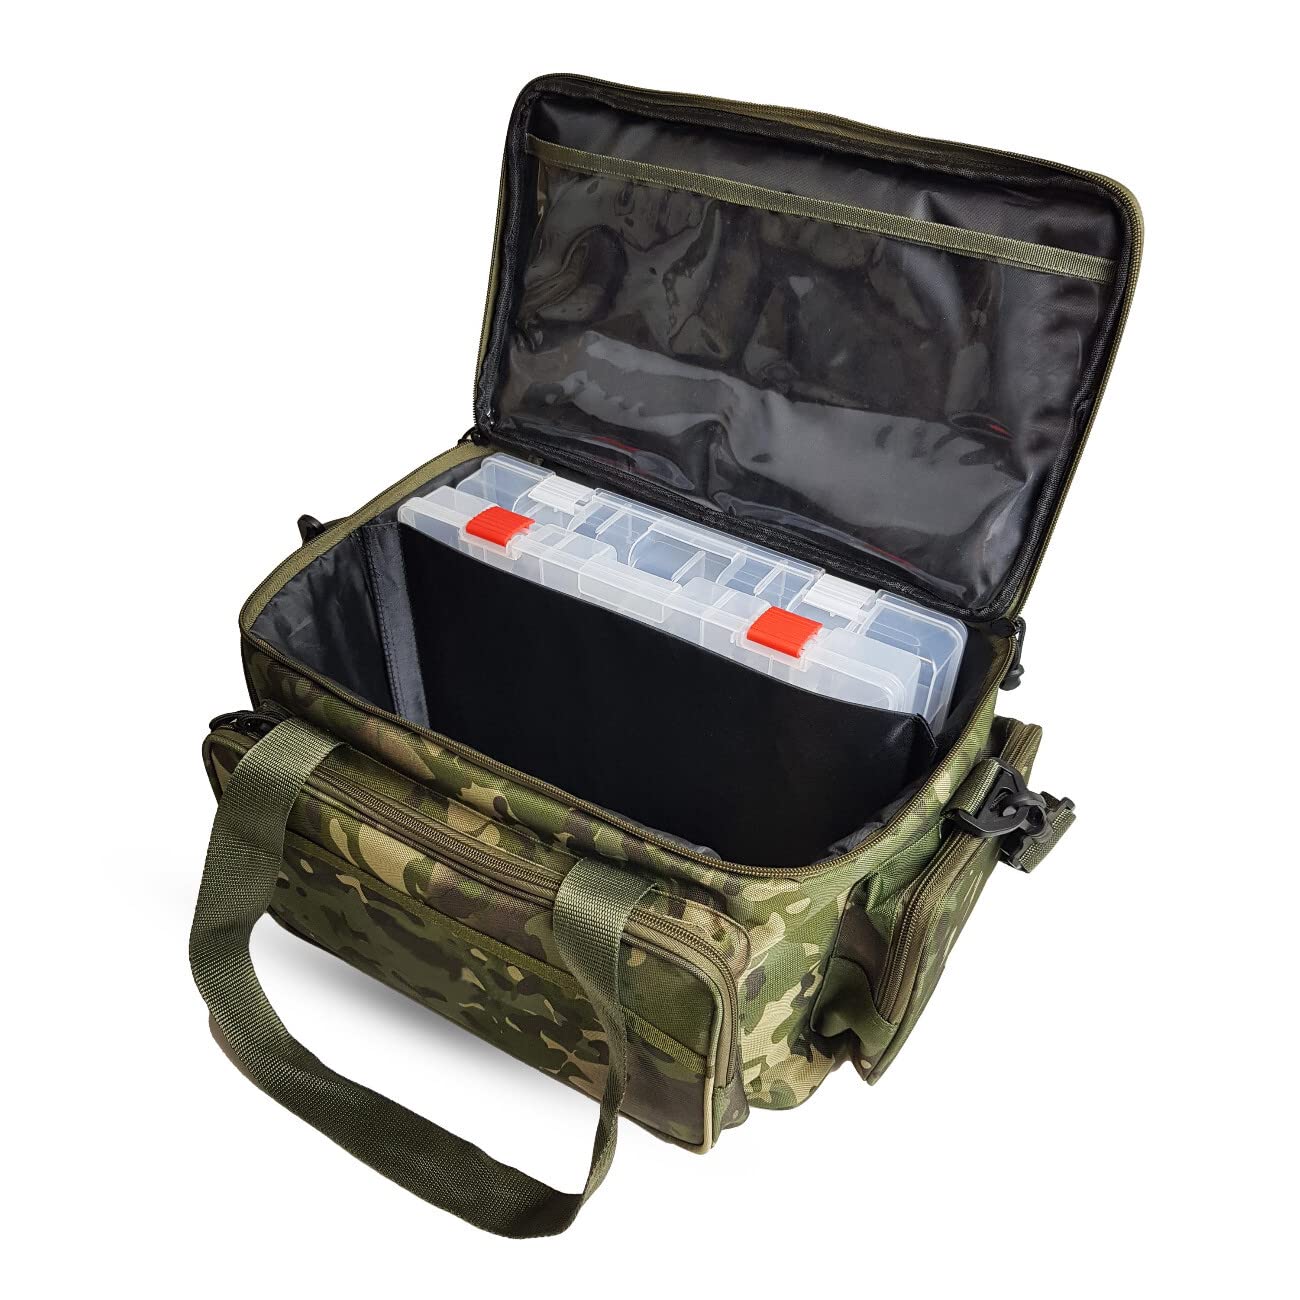 A&N Angeltasche Camouflage mit 2 Tackle Boxen 45x25x22cm Gerätetasche Köderbox